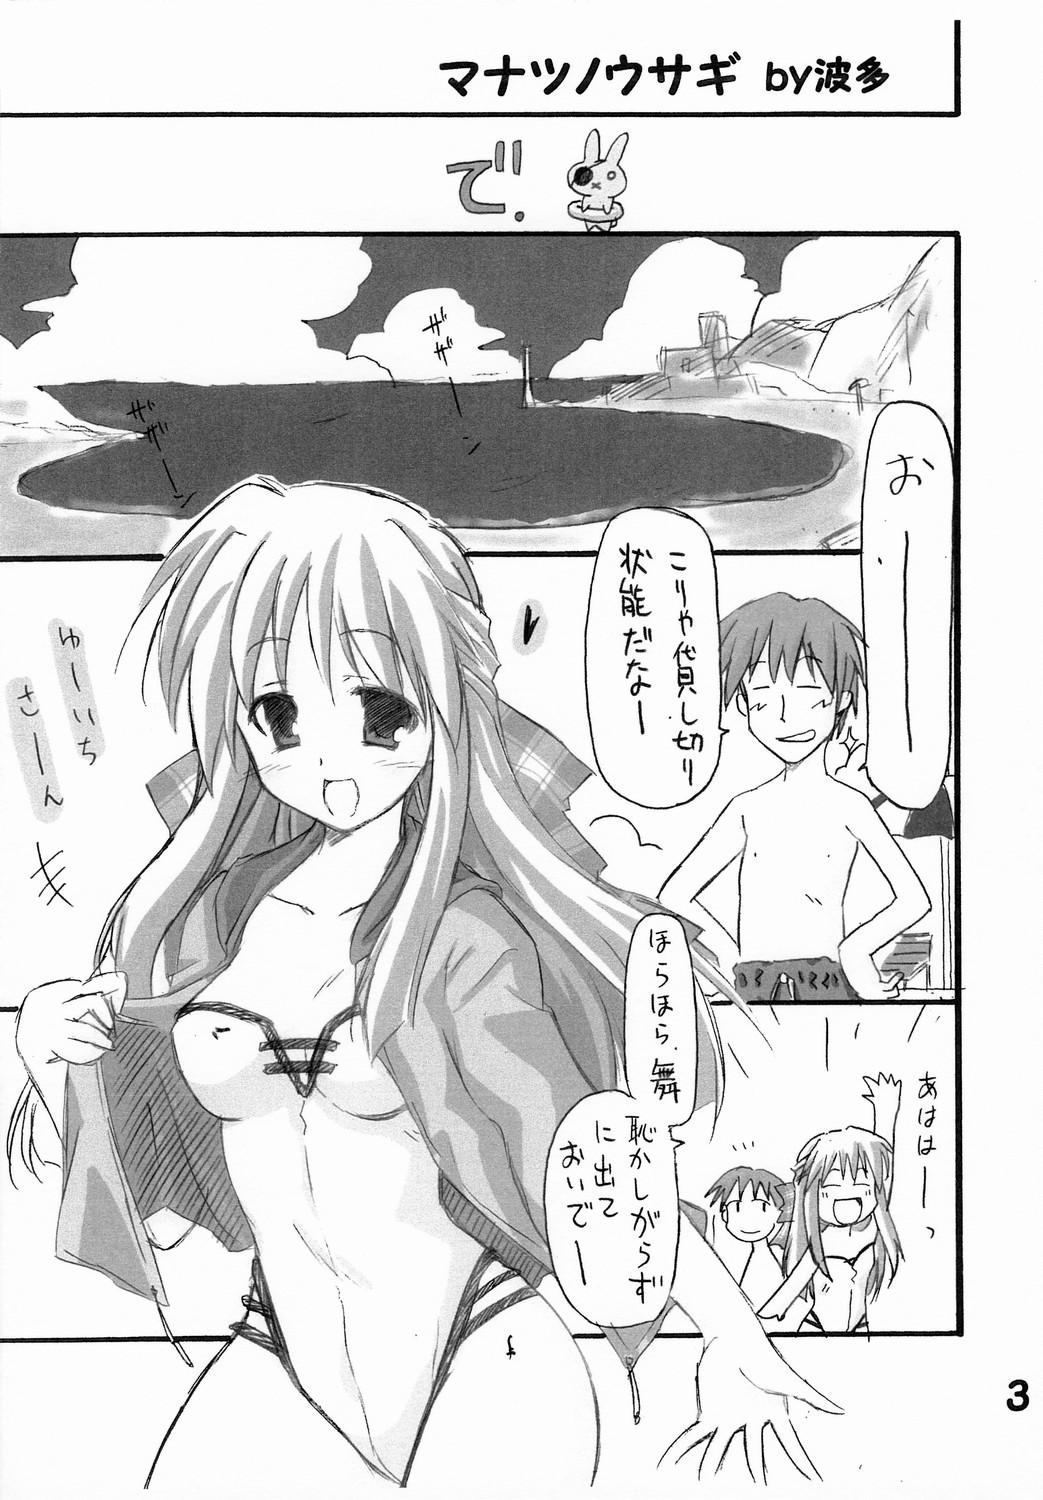 Animated Haru na no ni - Manatsu no Usagi - Kanon Hot Naked Women - Page 4